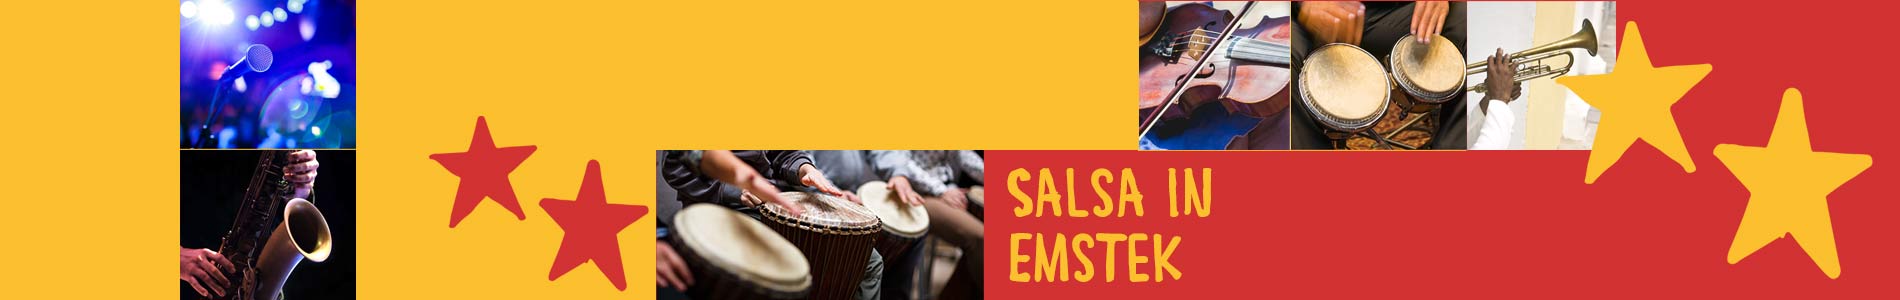 Salsa in Emstek – Salsa lernen und tanzen, Tanzkurse, Partys, Veranstaltungen